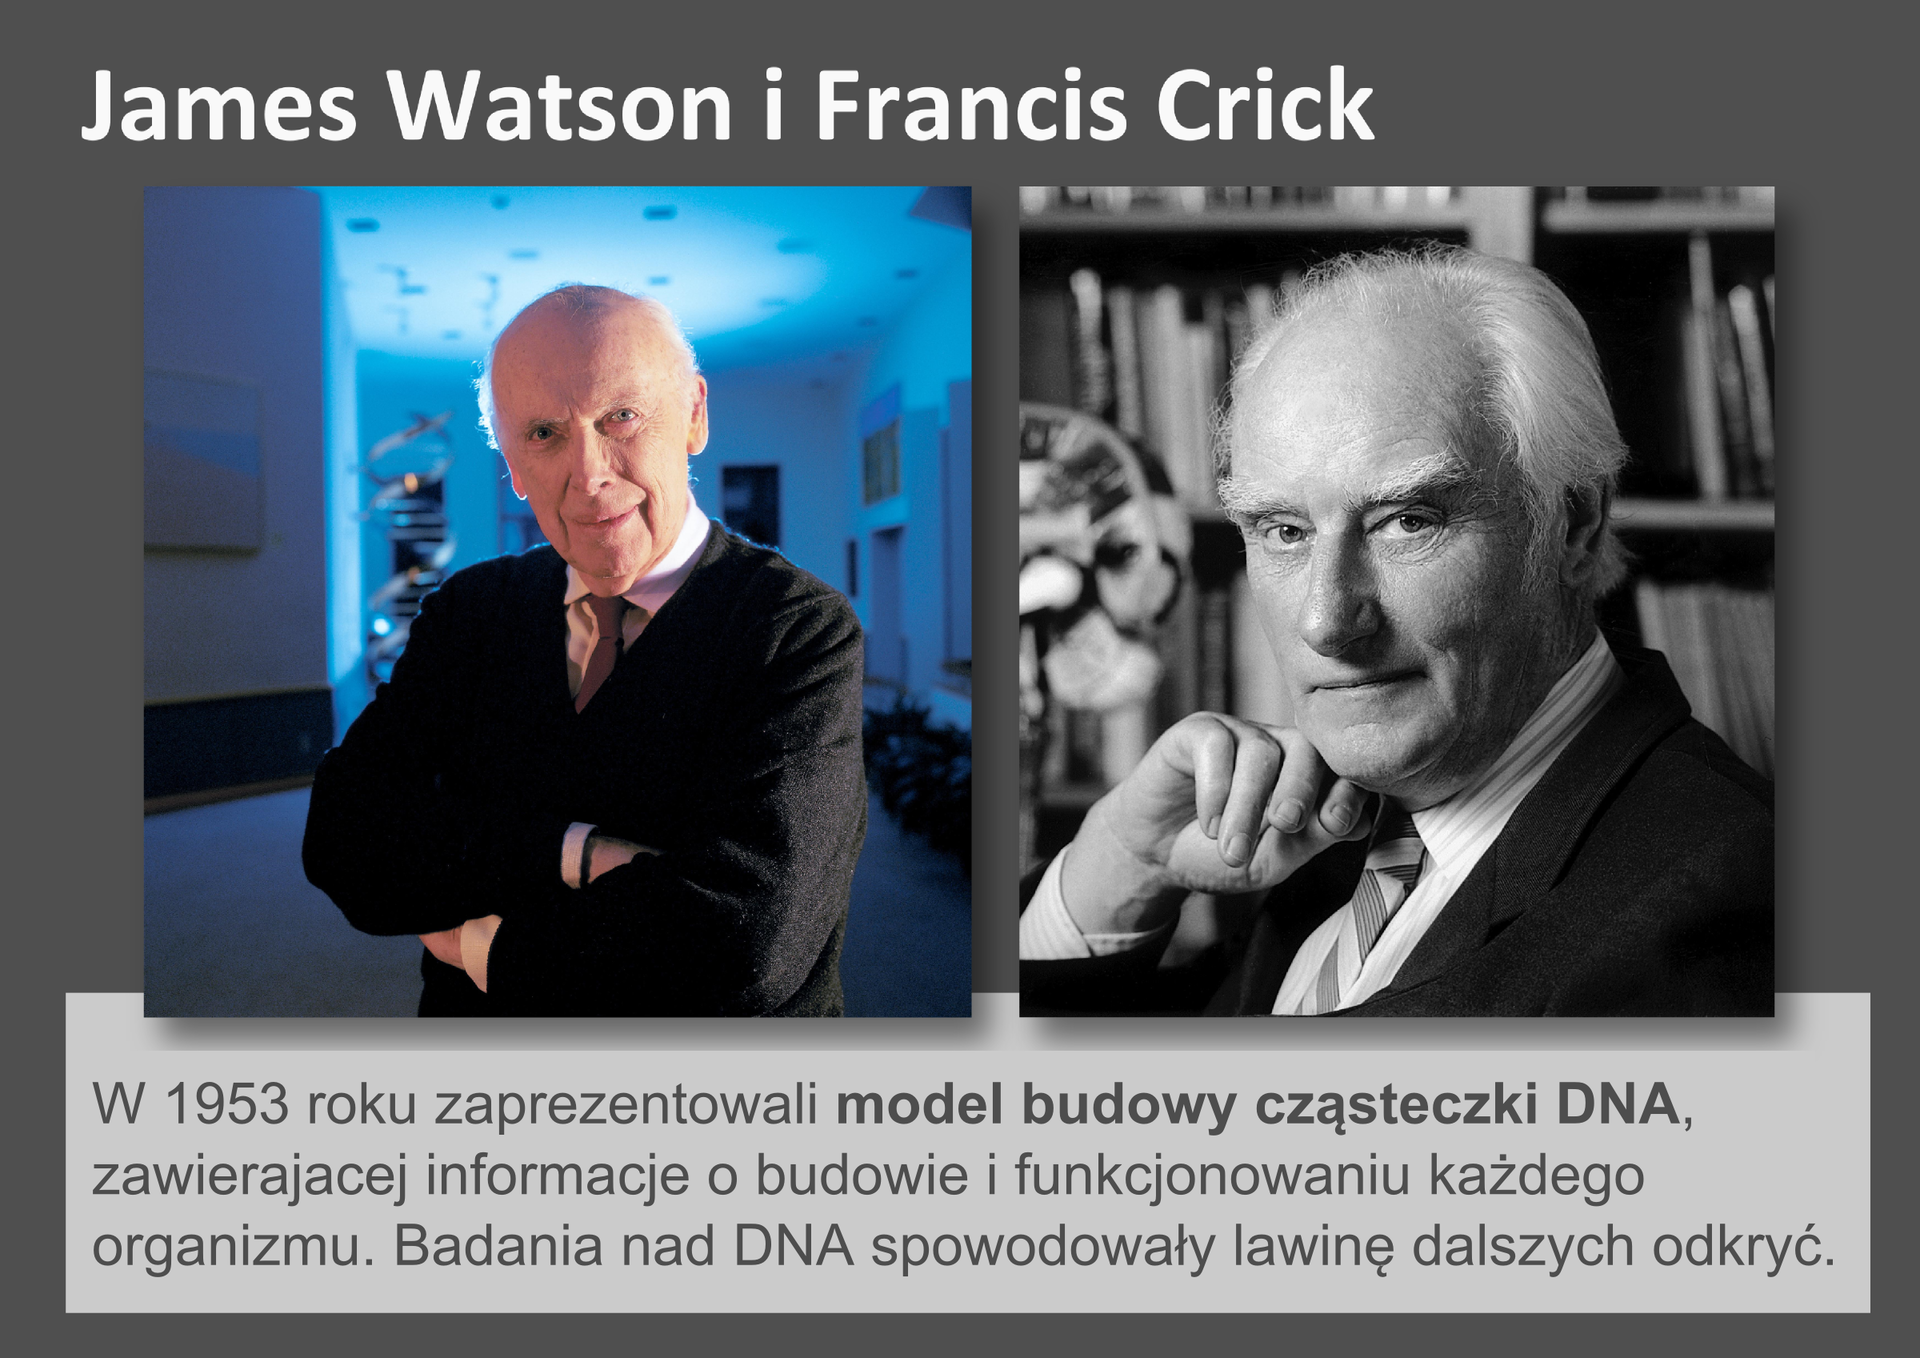 Galeria przedstawia pionierów nauk przyrodniczych. Składa się z dziewięciu slajdów w postaci ilustracji i umieszczonego obok opisu. Ilustracje pojawiają się kolejno, kiedy klika się w strzałki, znajdujące się po prawej i lewej stronie ilustracji. Ostatni slajd to fotografie dwóch uśmiechniętych, angielskich uczonych: Jamesa Watsona i Francisa Cricka. W 1953 roku zaprezentowali model budowy cząsteczki DNA, co zapoczątkowało wiele nowych odkryć.